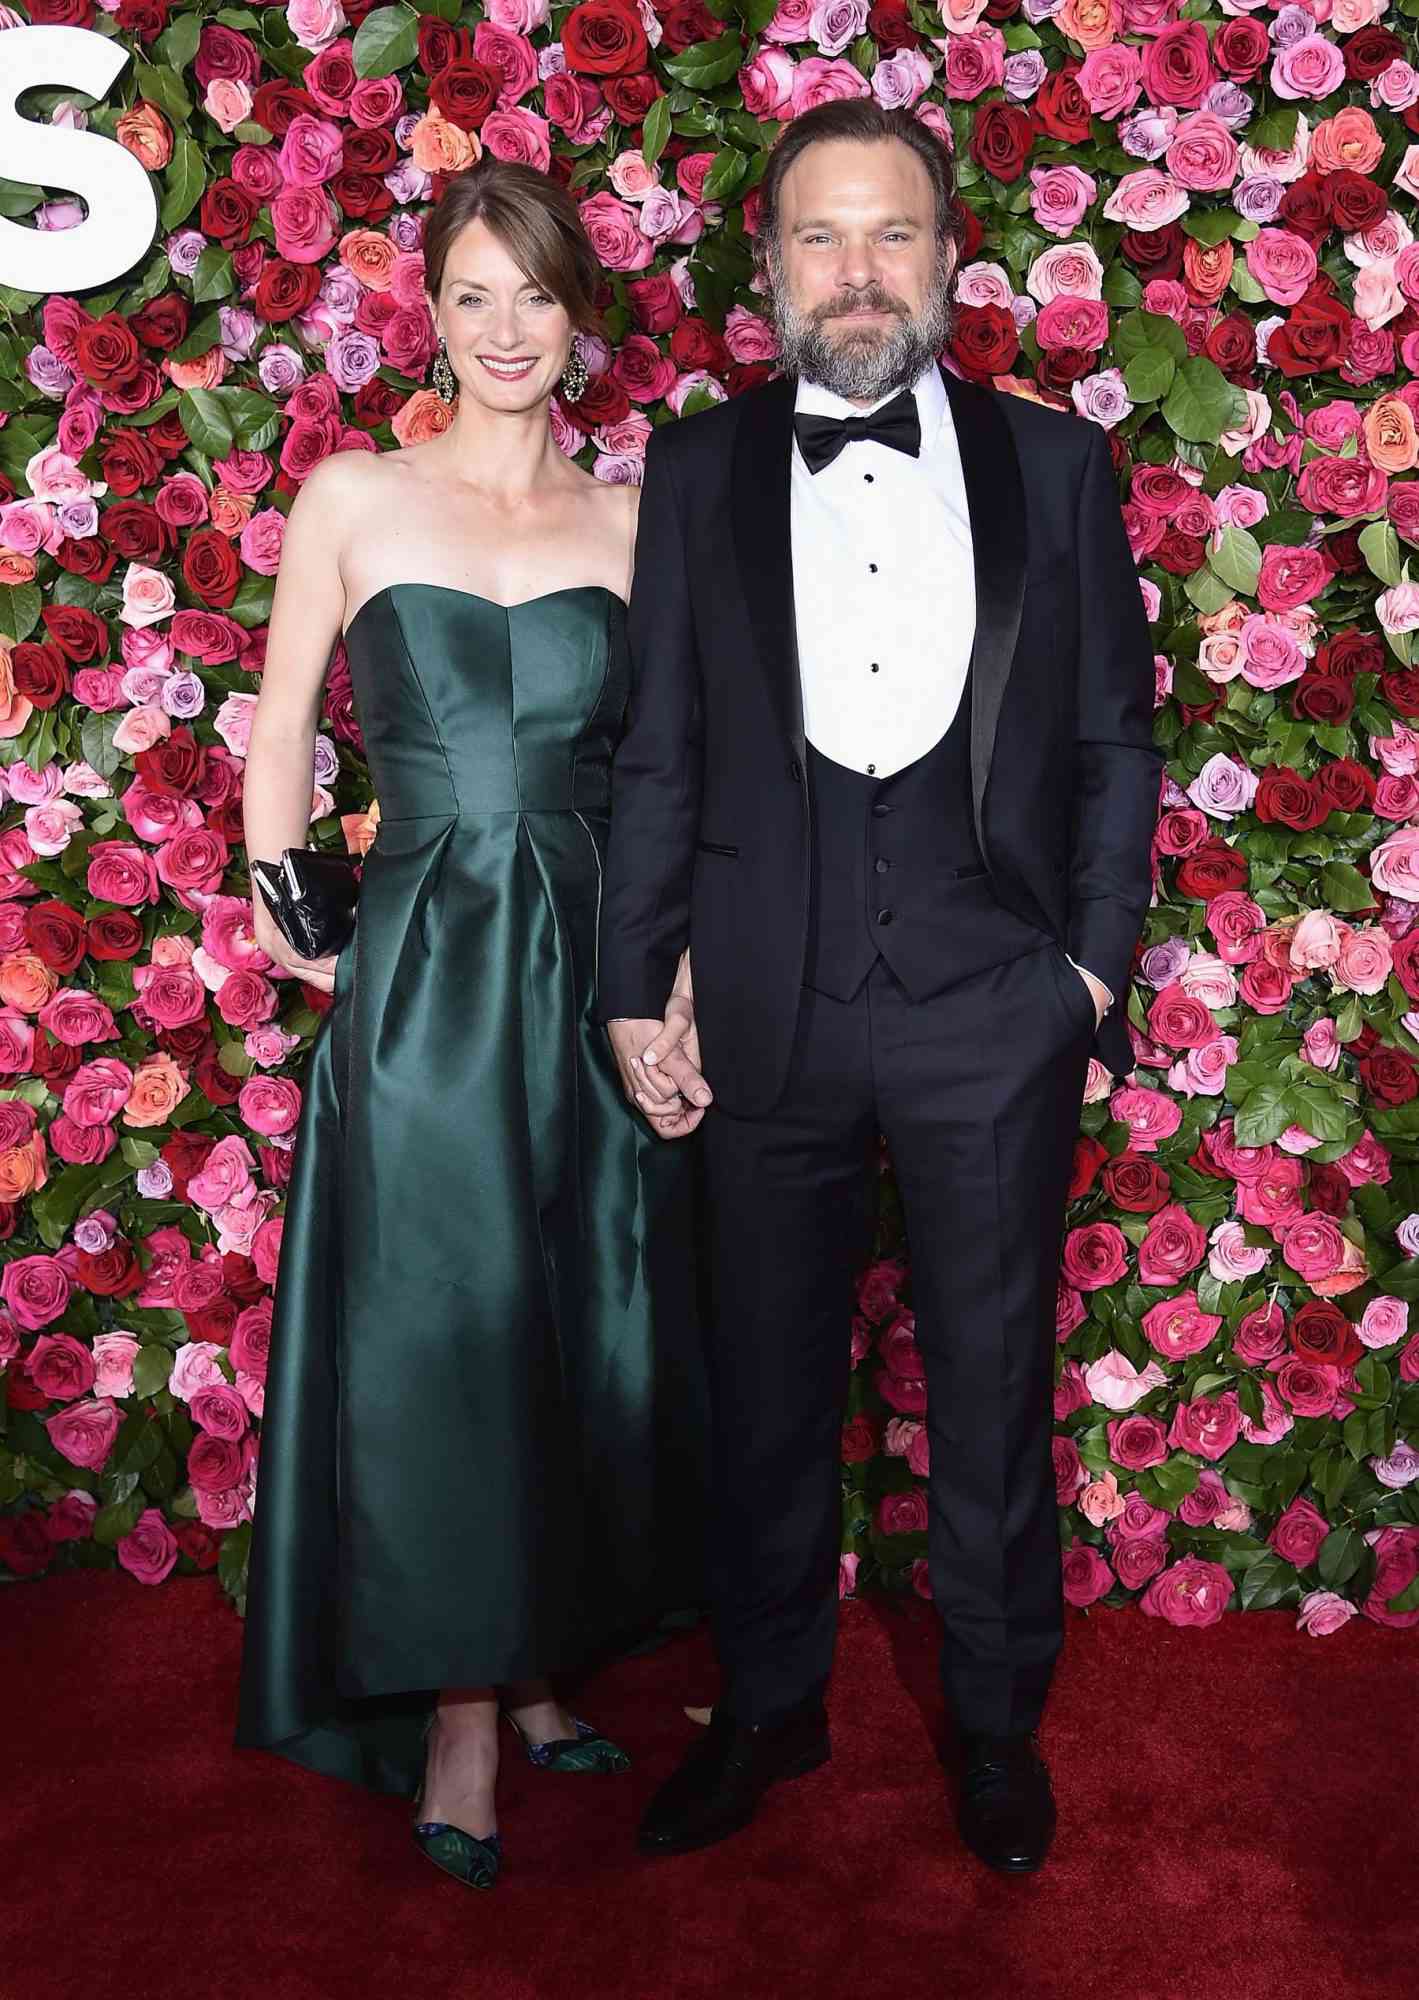 2018 Tony Awards - Red Carpet